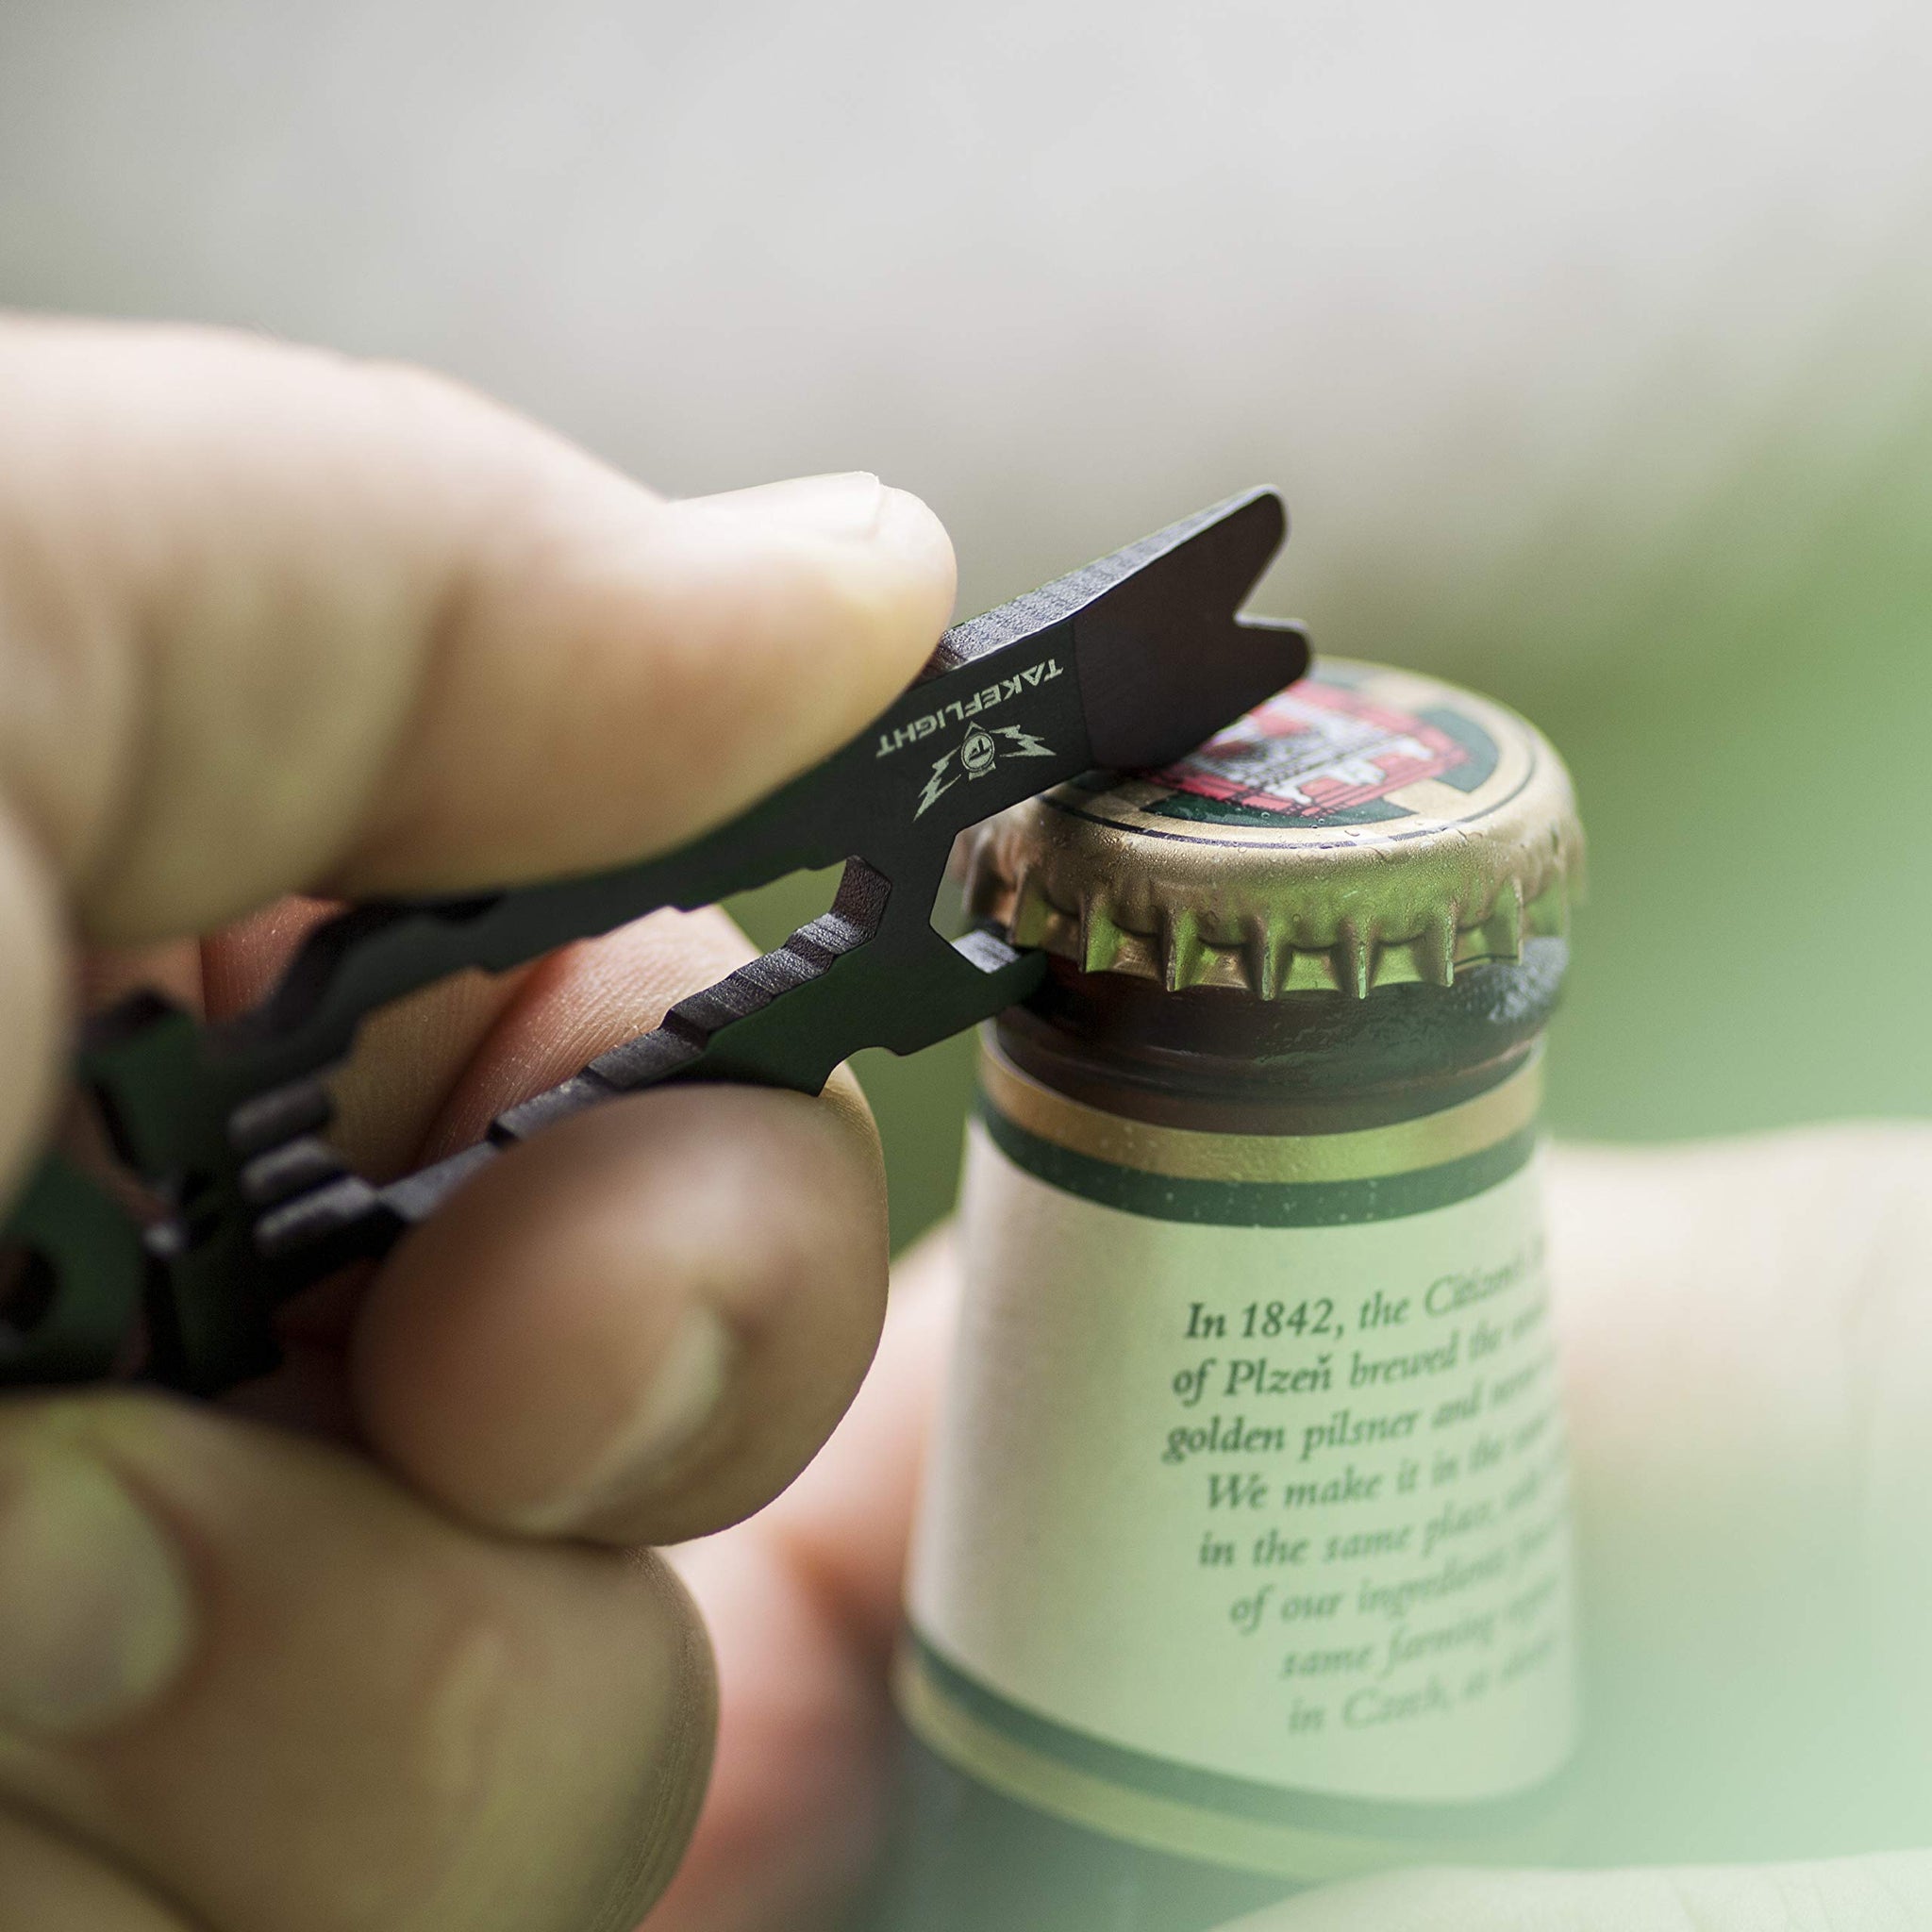 Creative Bottle Opener Beer Bottle Opener Funny Gadget Tools Gift